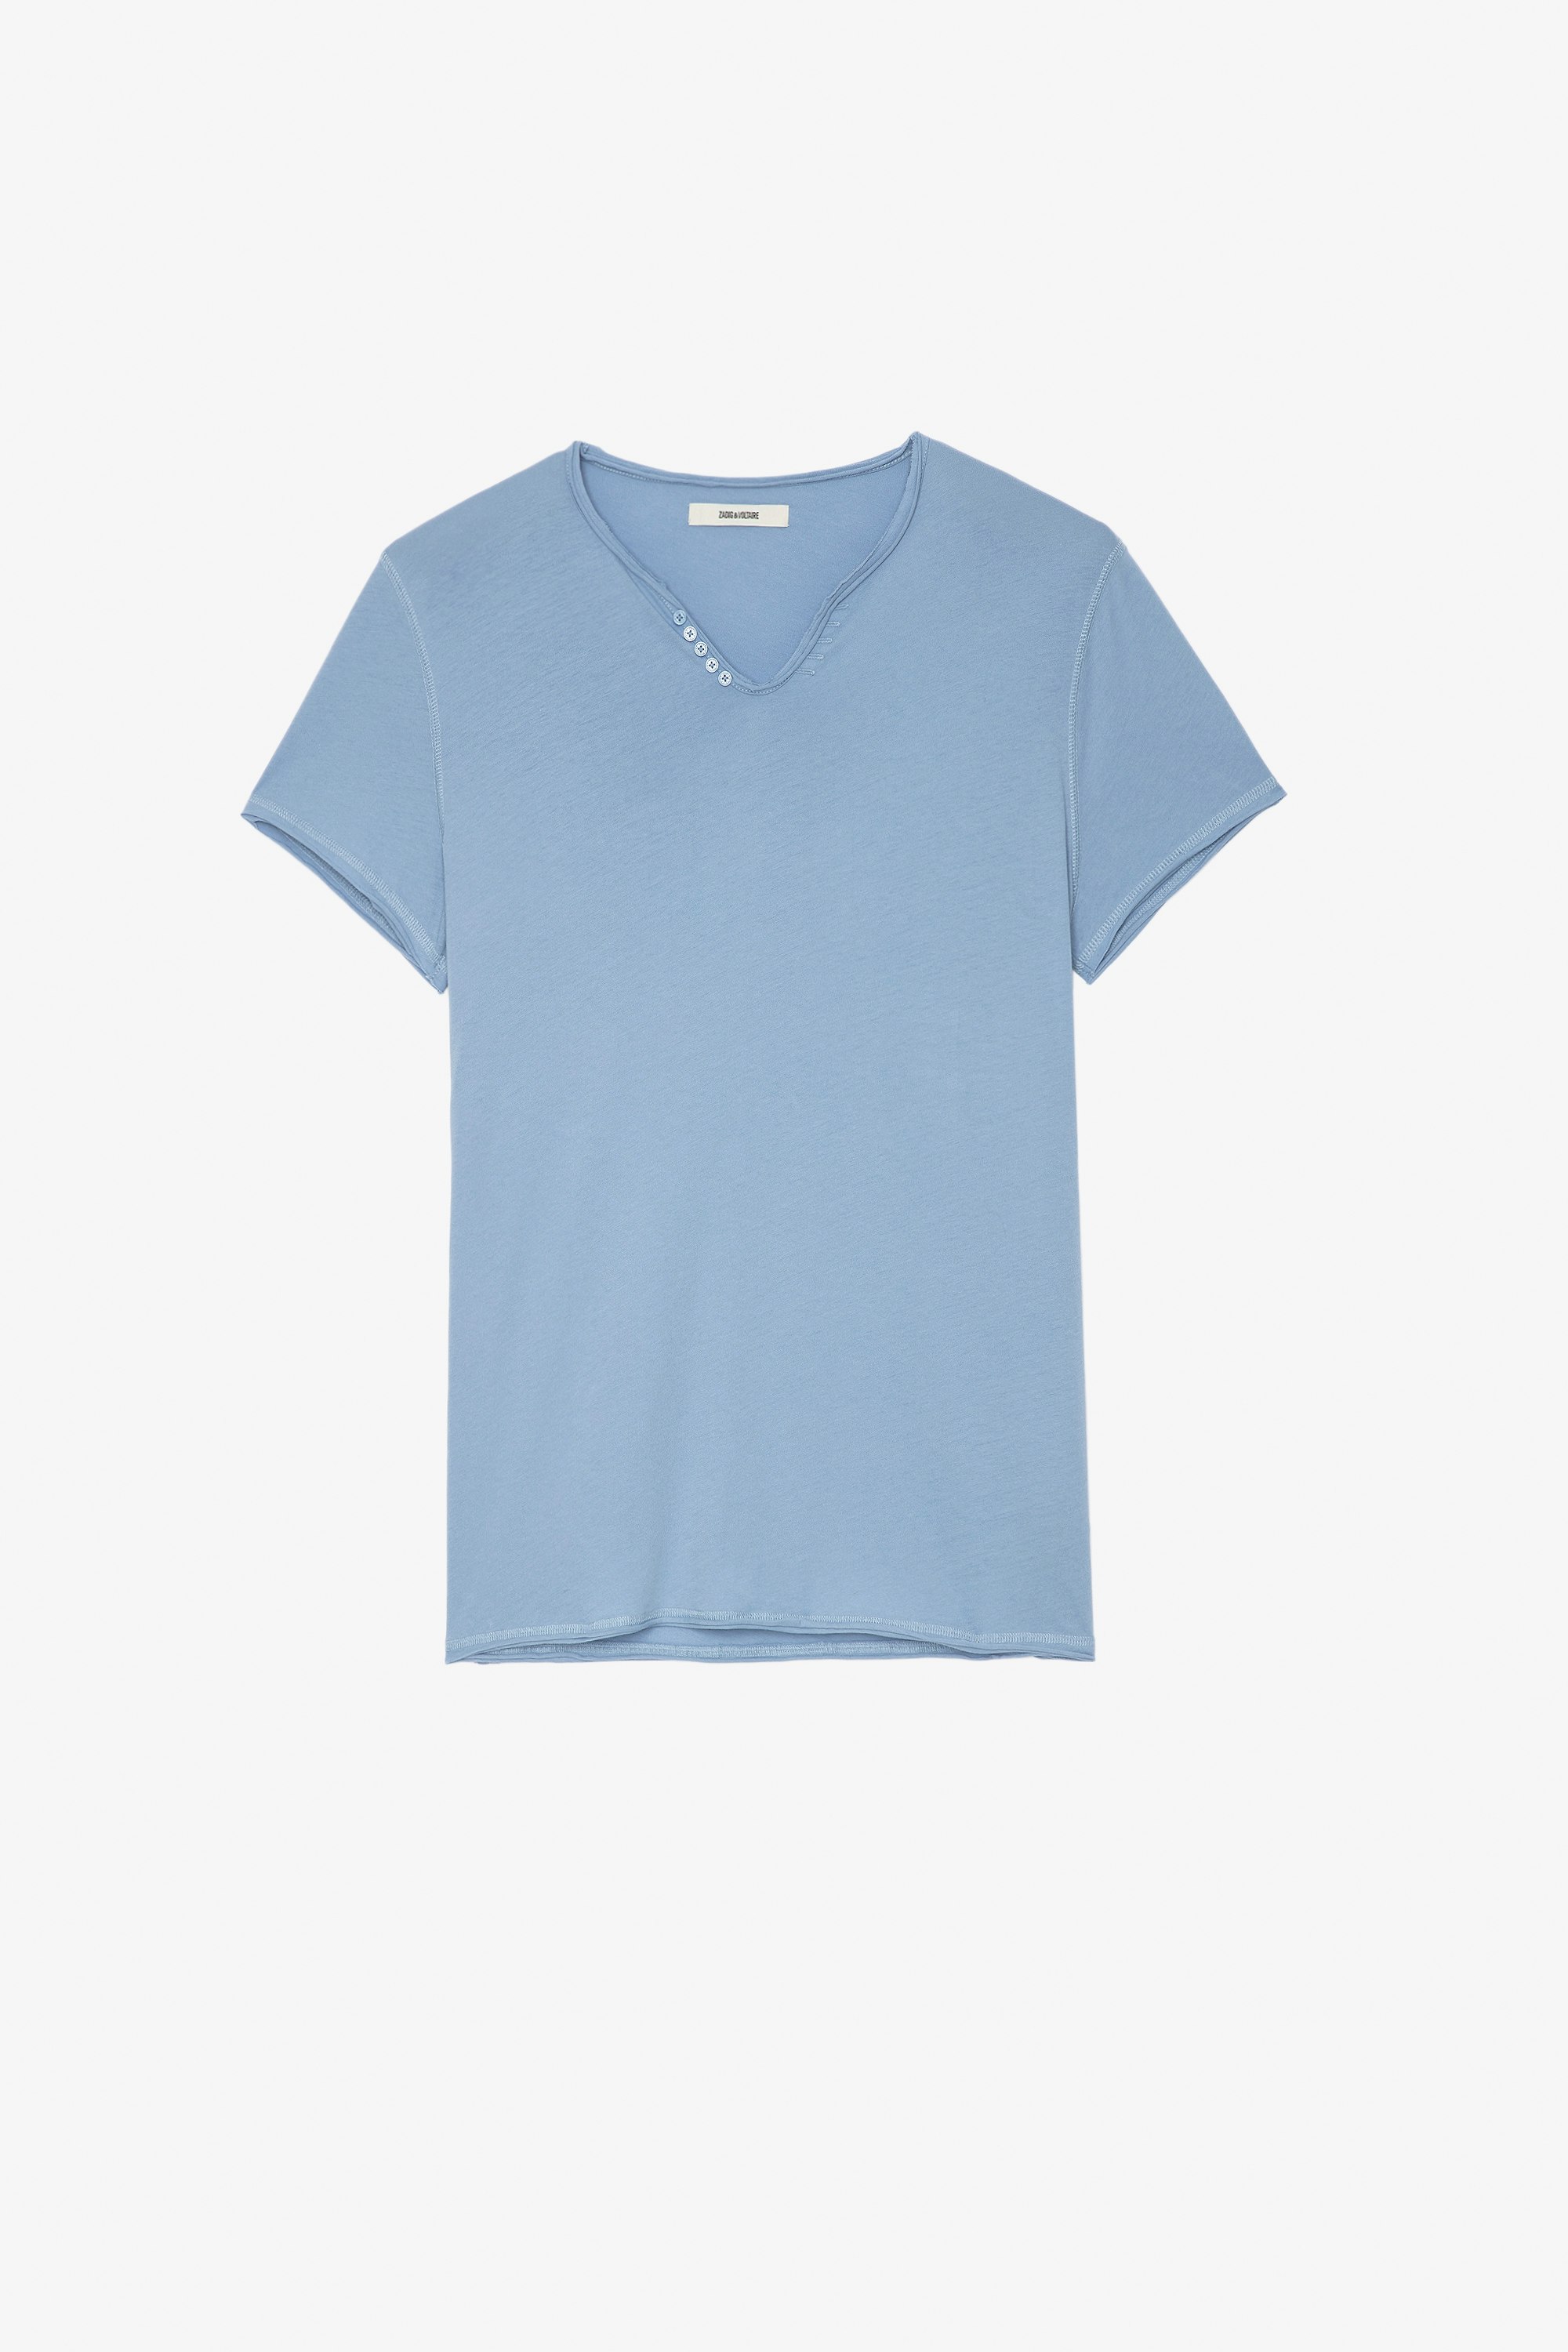 T-Shirt Monastir Herren-T-Shirt aus blauer Baumwolle mit Henley-Ausschnitt